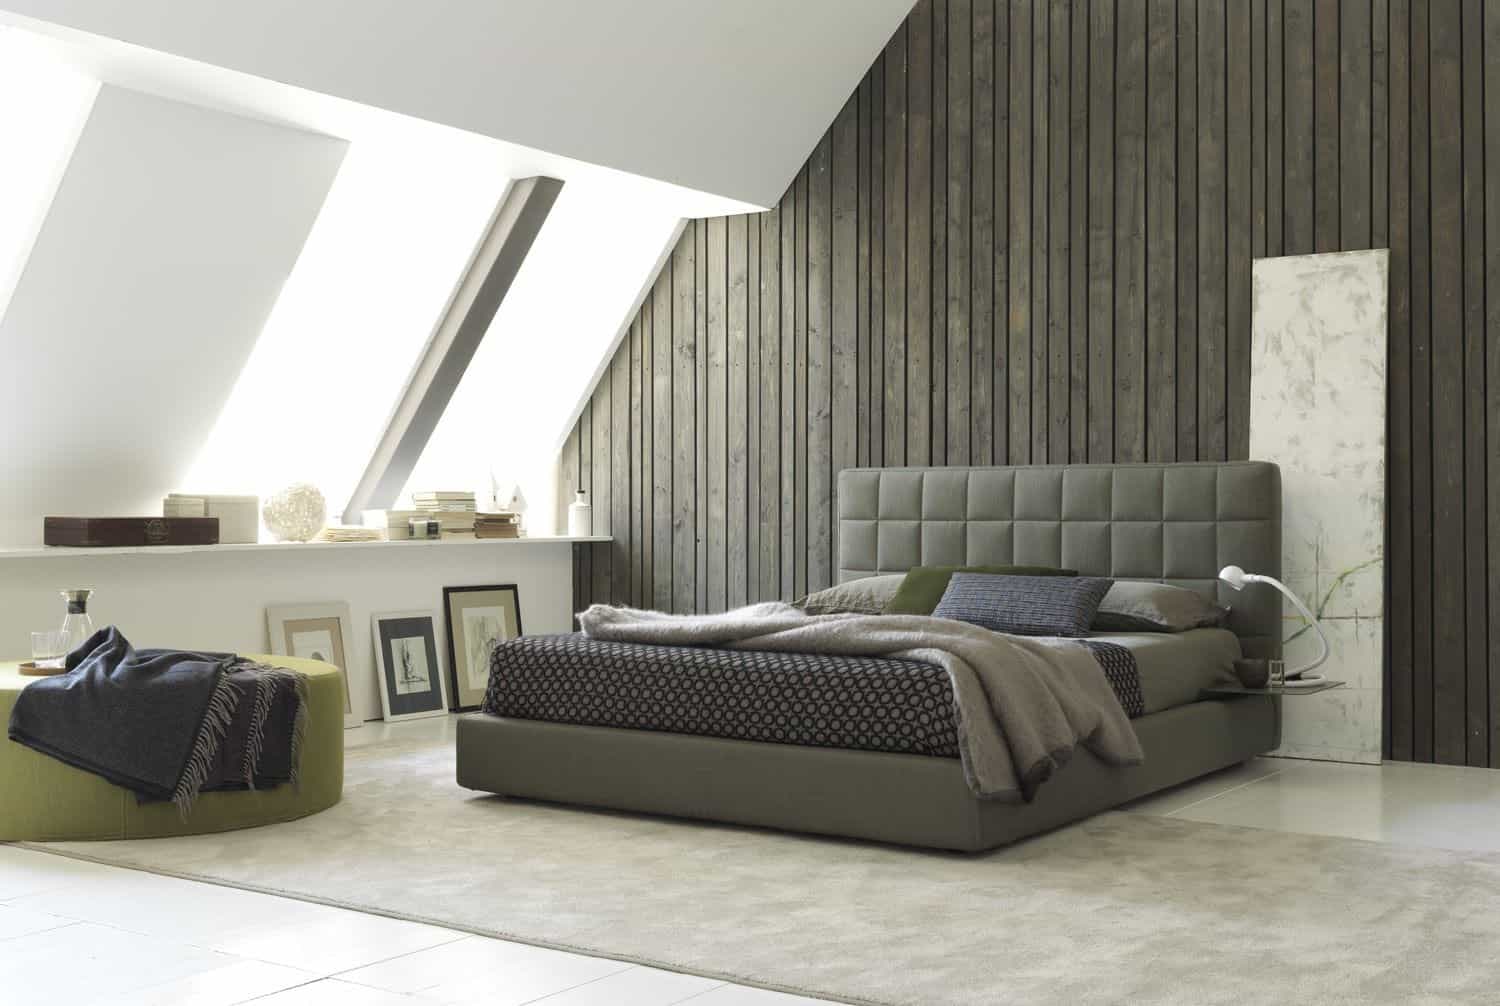 loft-bedroom-with-recycled-wood-wall-bolzan-vittoria.jpg